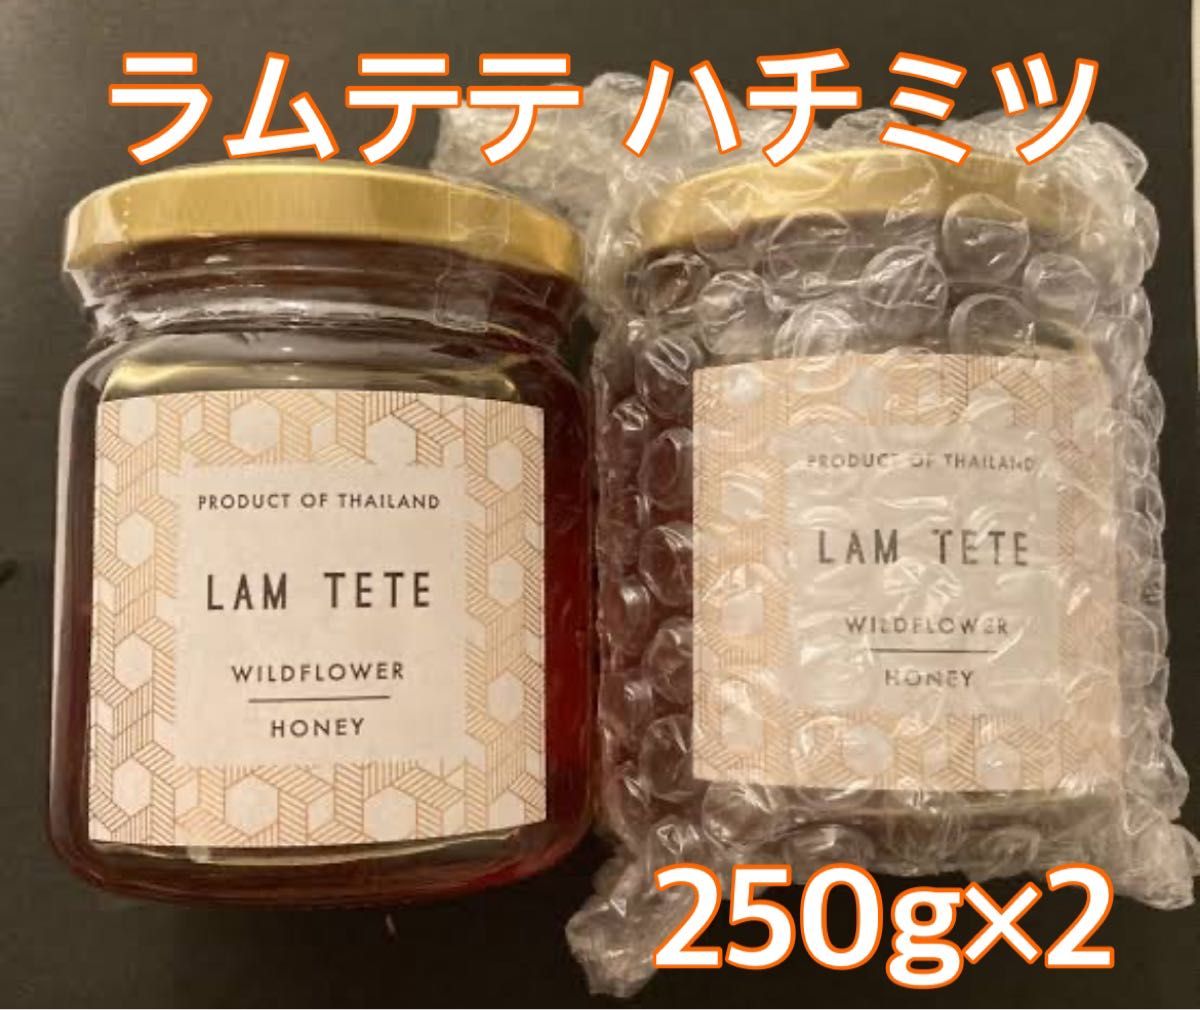 蜂蜜 ラムテテ ワイルドフラワーハニー 250g 2個セット  ハチミツ ギフト 未開封 濃厚 はちみつ 料理 お菓子作り 紅茶